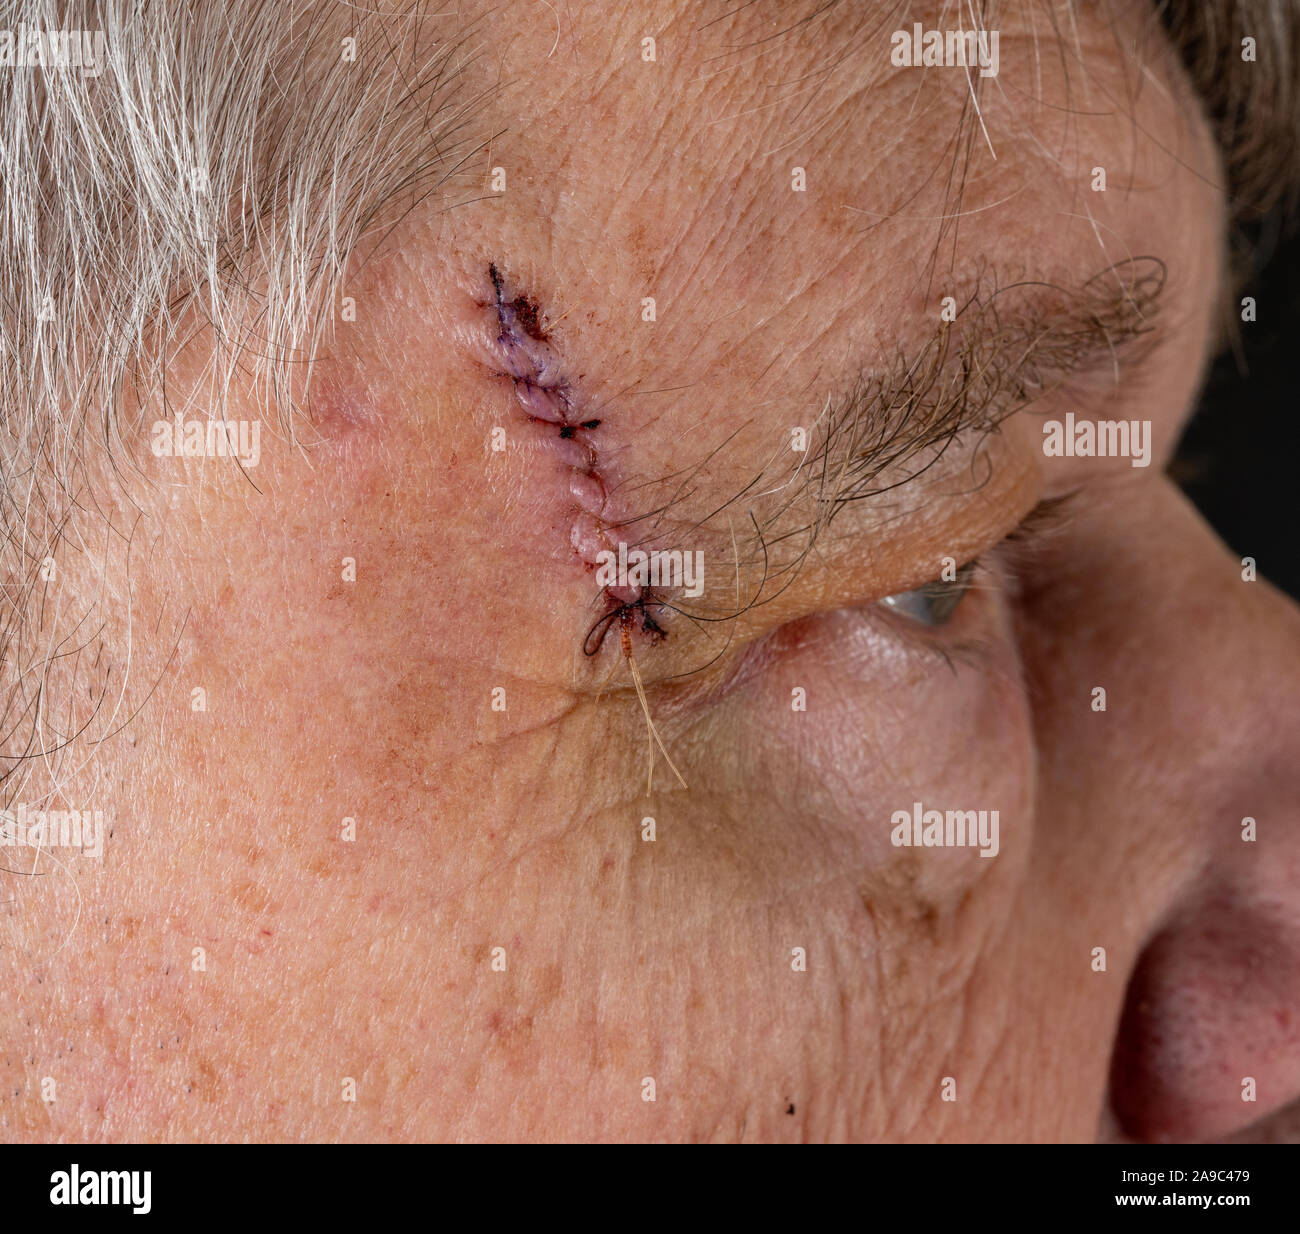 Senior masculino adulto con puntos de sutura en la corte después de la cirugía para la extirpación de un carcinoma de célula basal causada por el daño solar Foto de stock